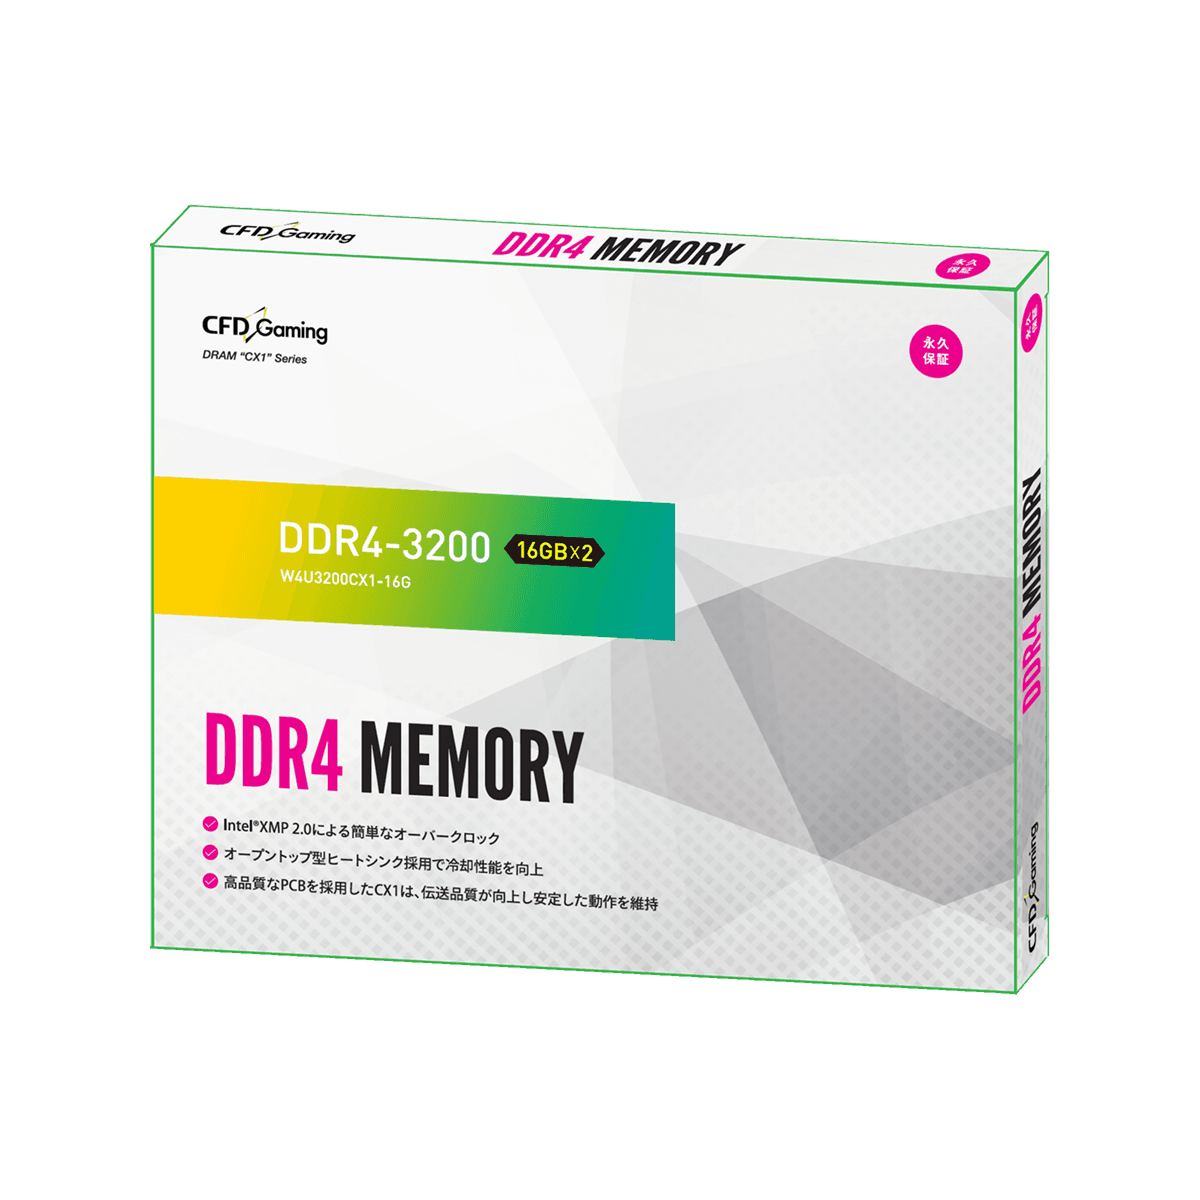 CFD Gaming CX1シリーズ DDR4-3200 デスクトップ用メモリ 16GBx2(Heatsink搭載) W4U3200CX1